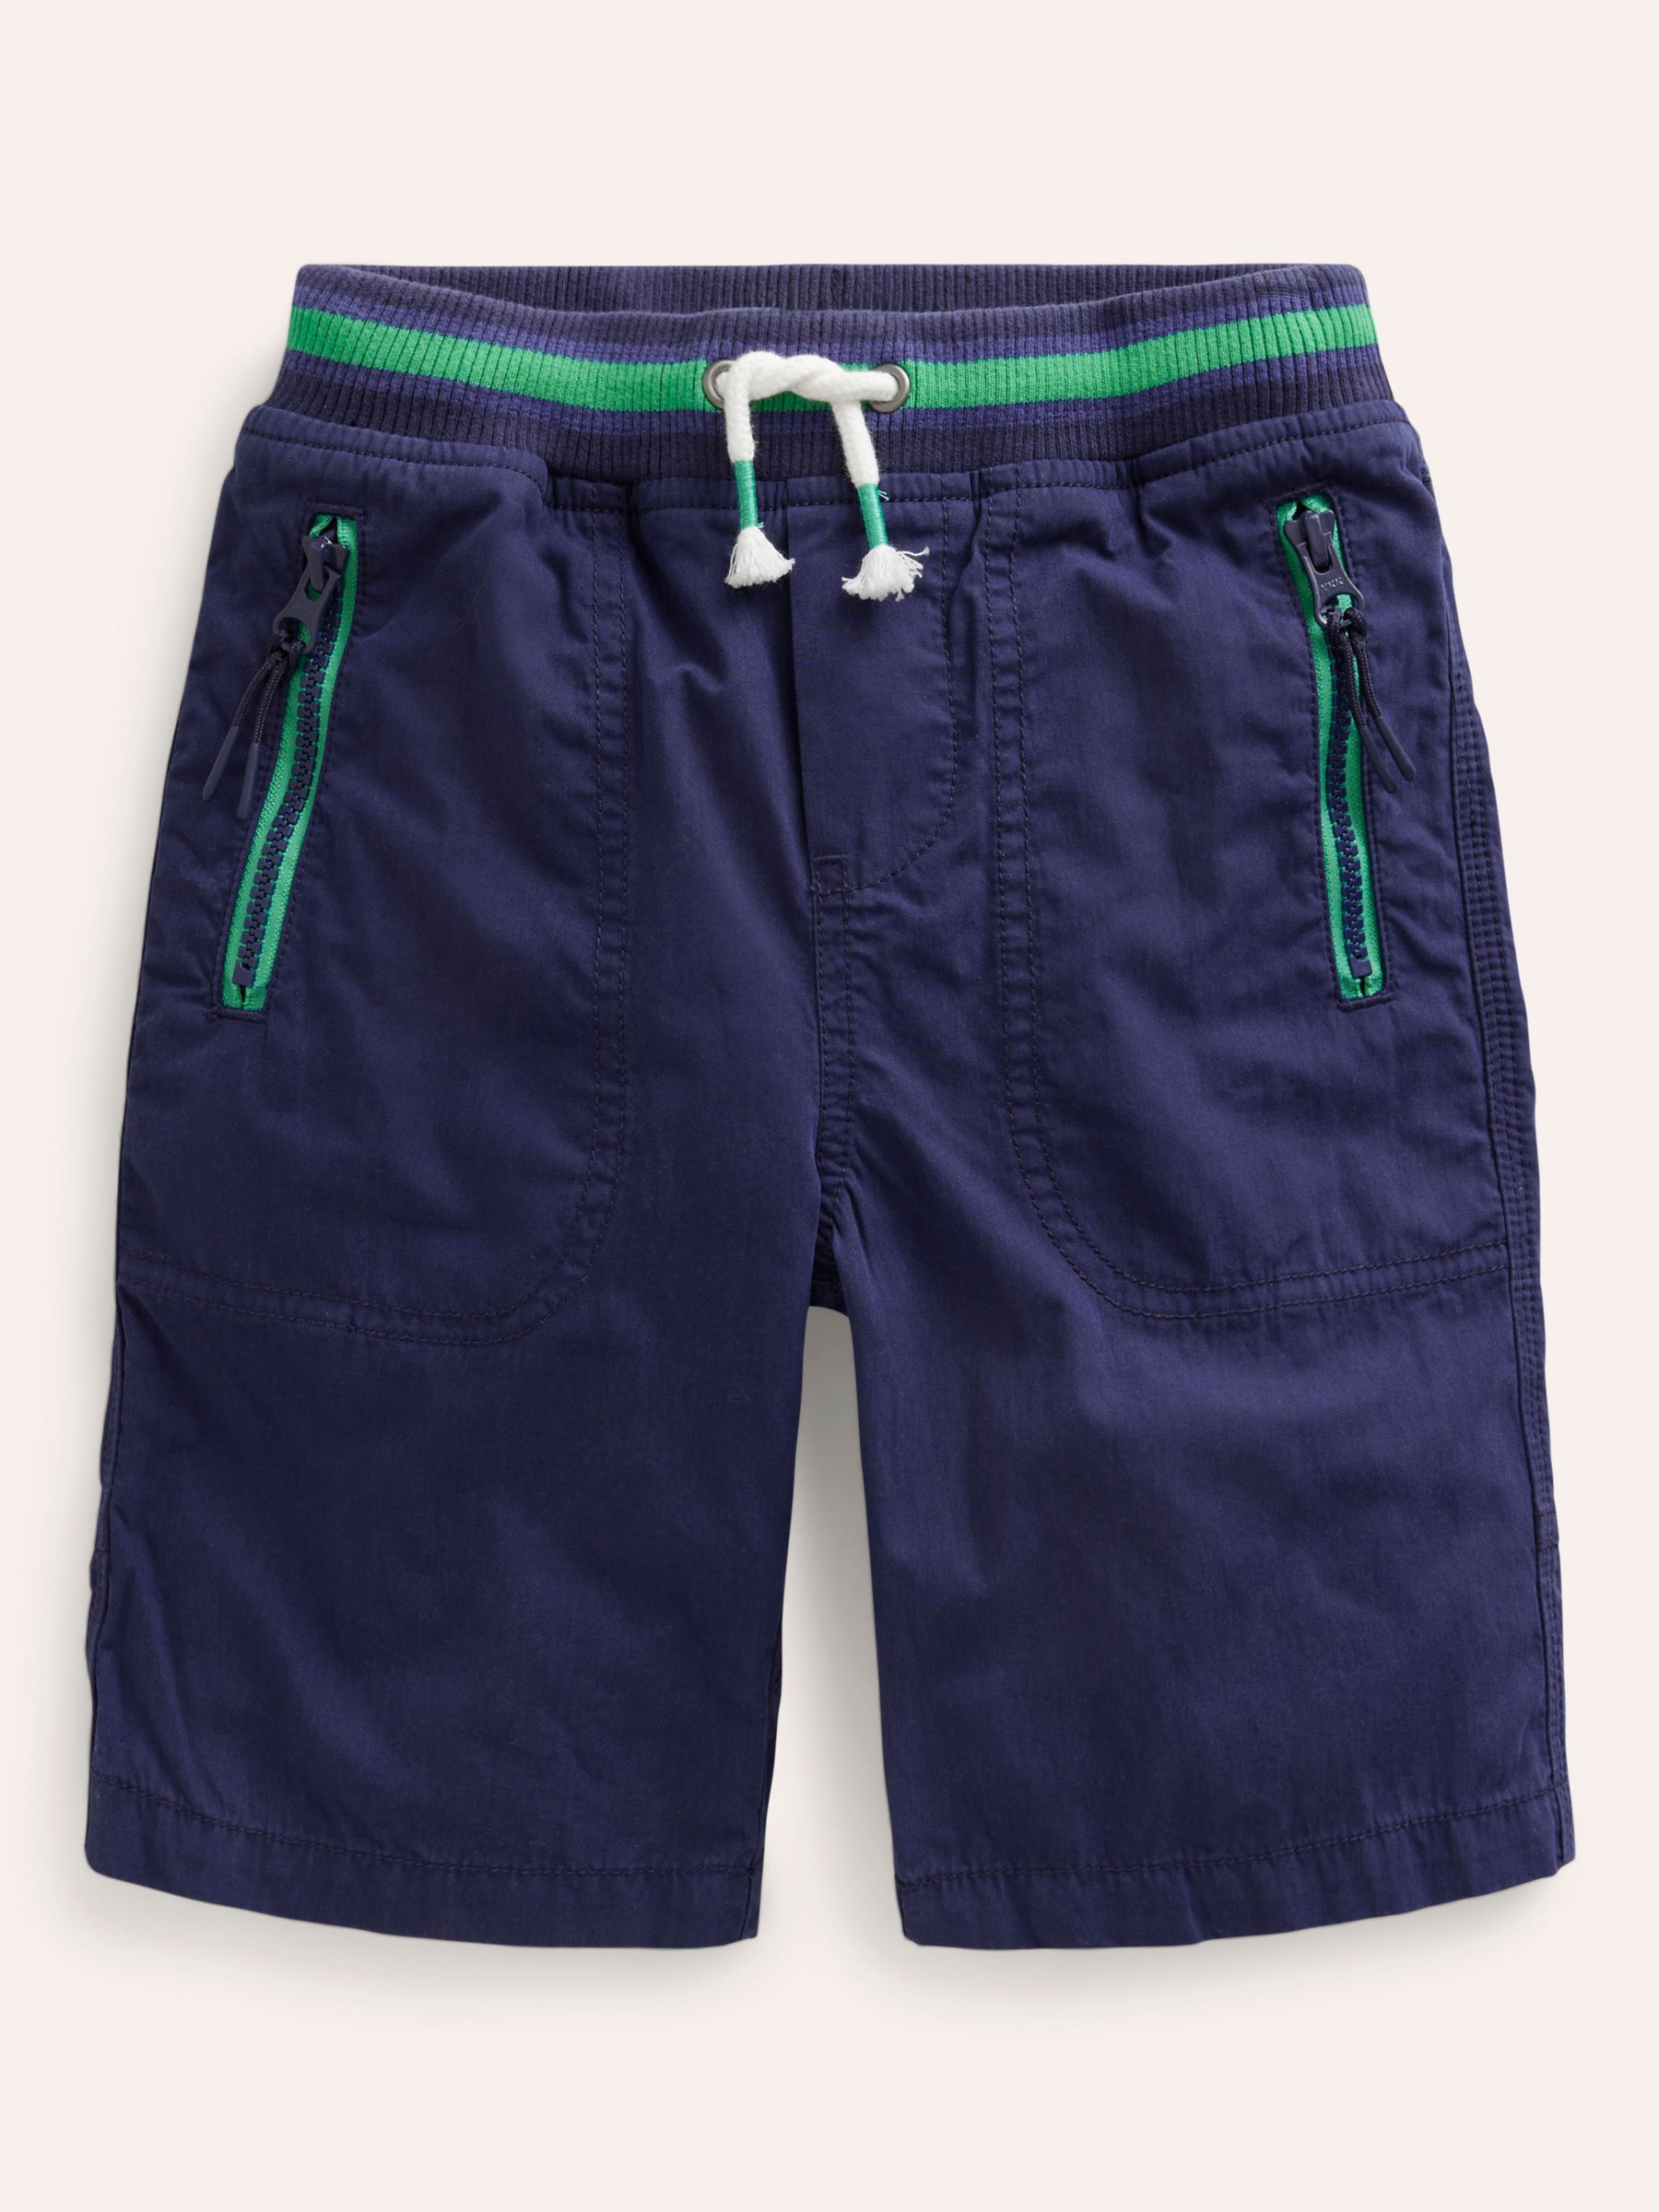 Boden Casual Cotton Shorts, Seaspray, 8